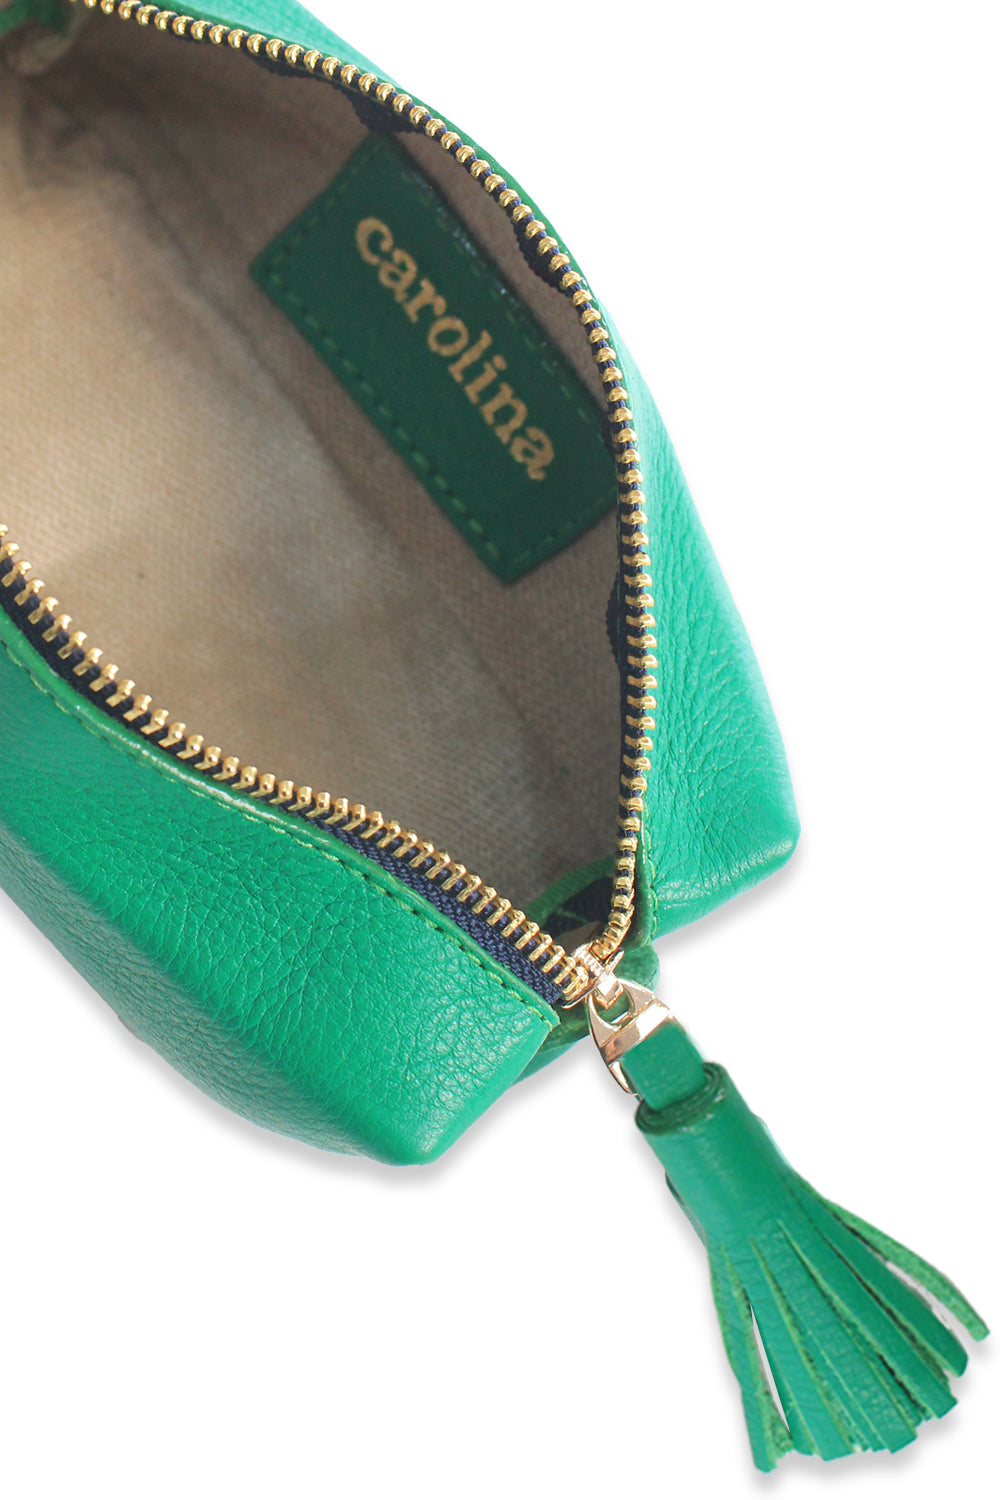 Make Up Bag Emerald SL Leather